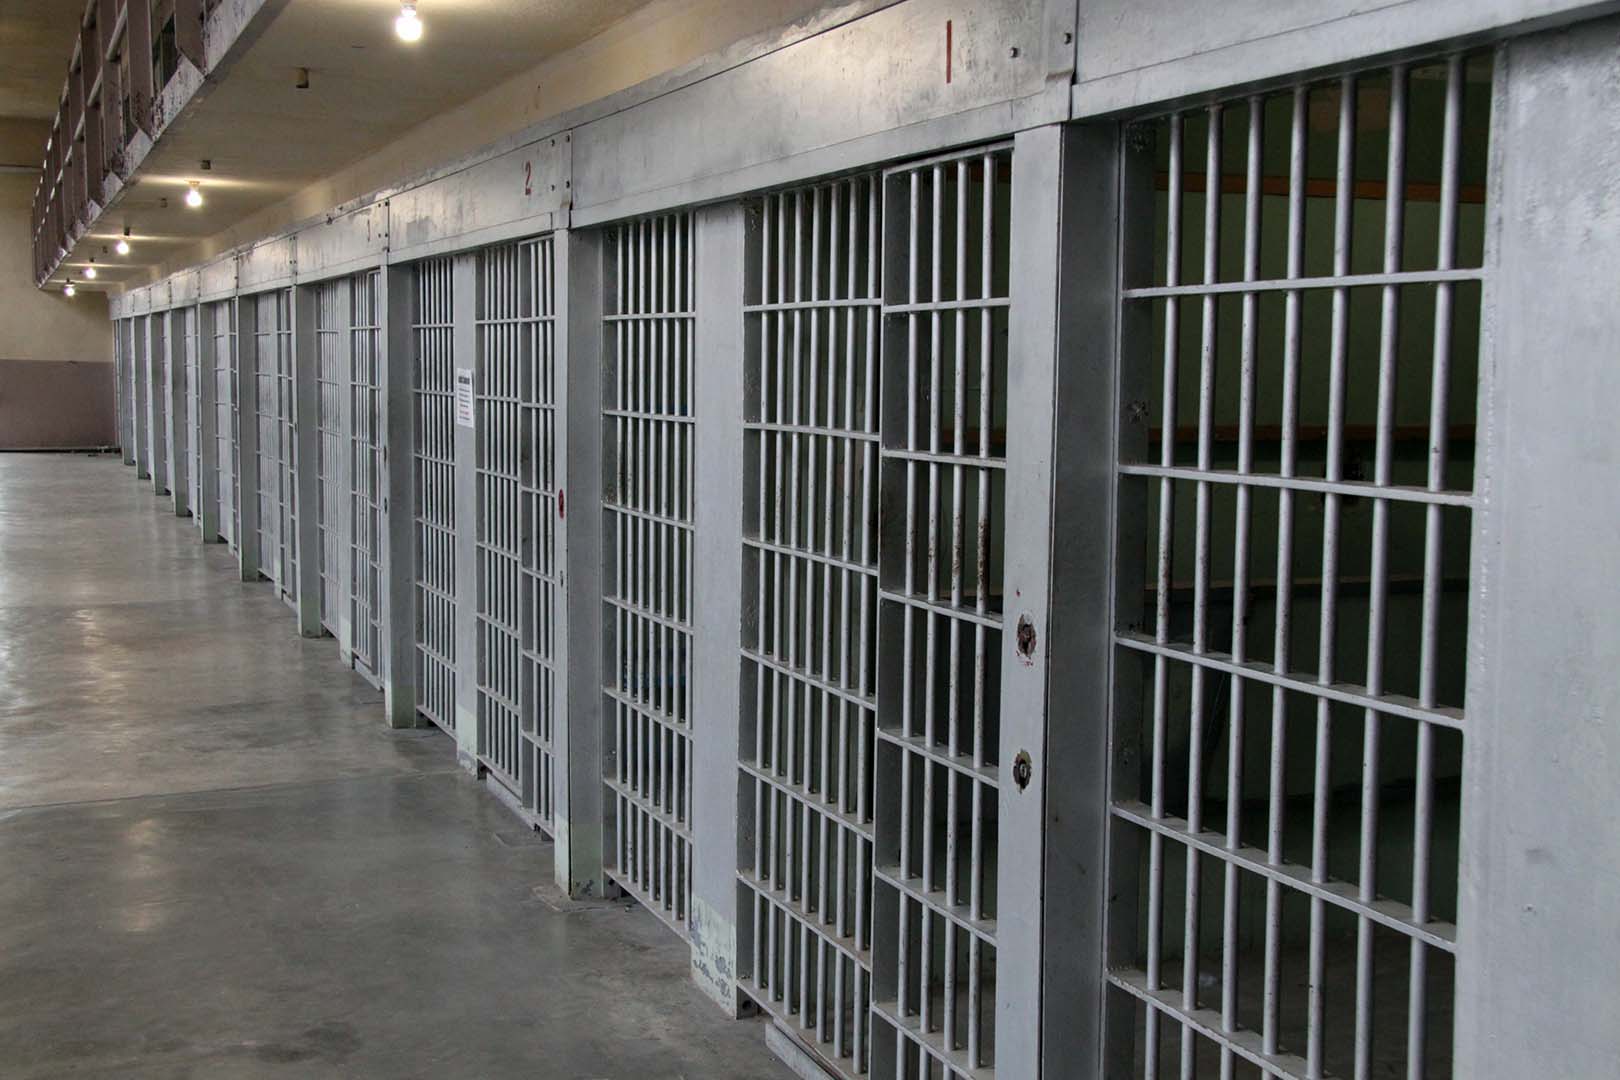 La única hispana condenada a la pena de muerte en Texas será ejecutada el 27 de abril